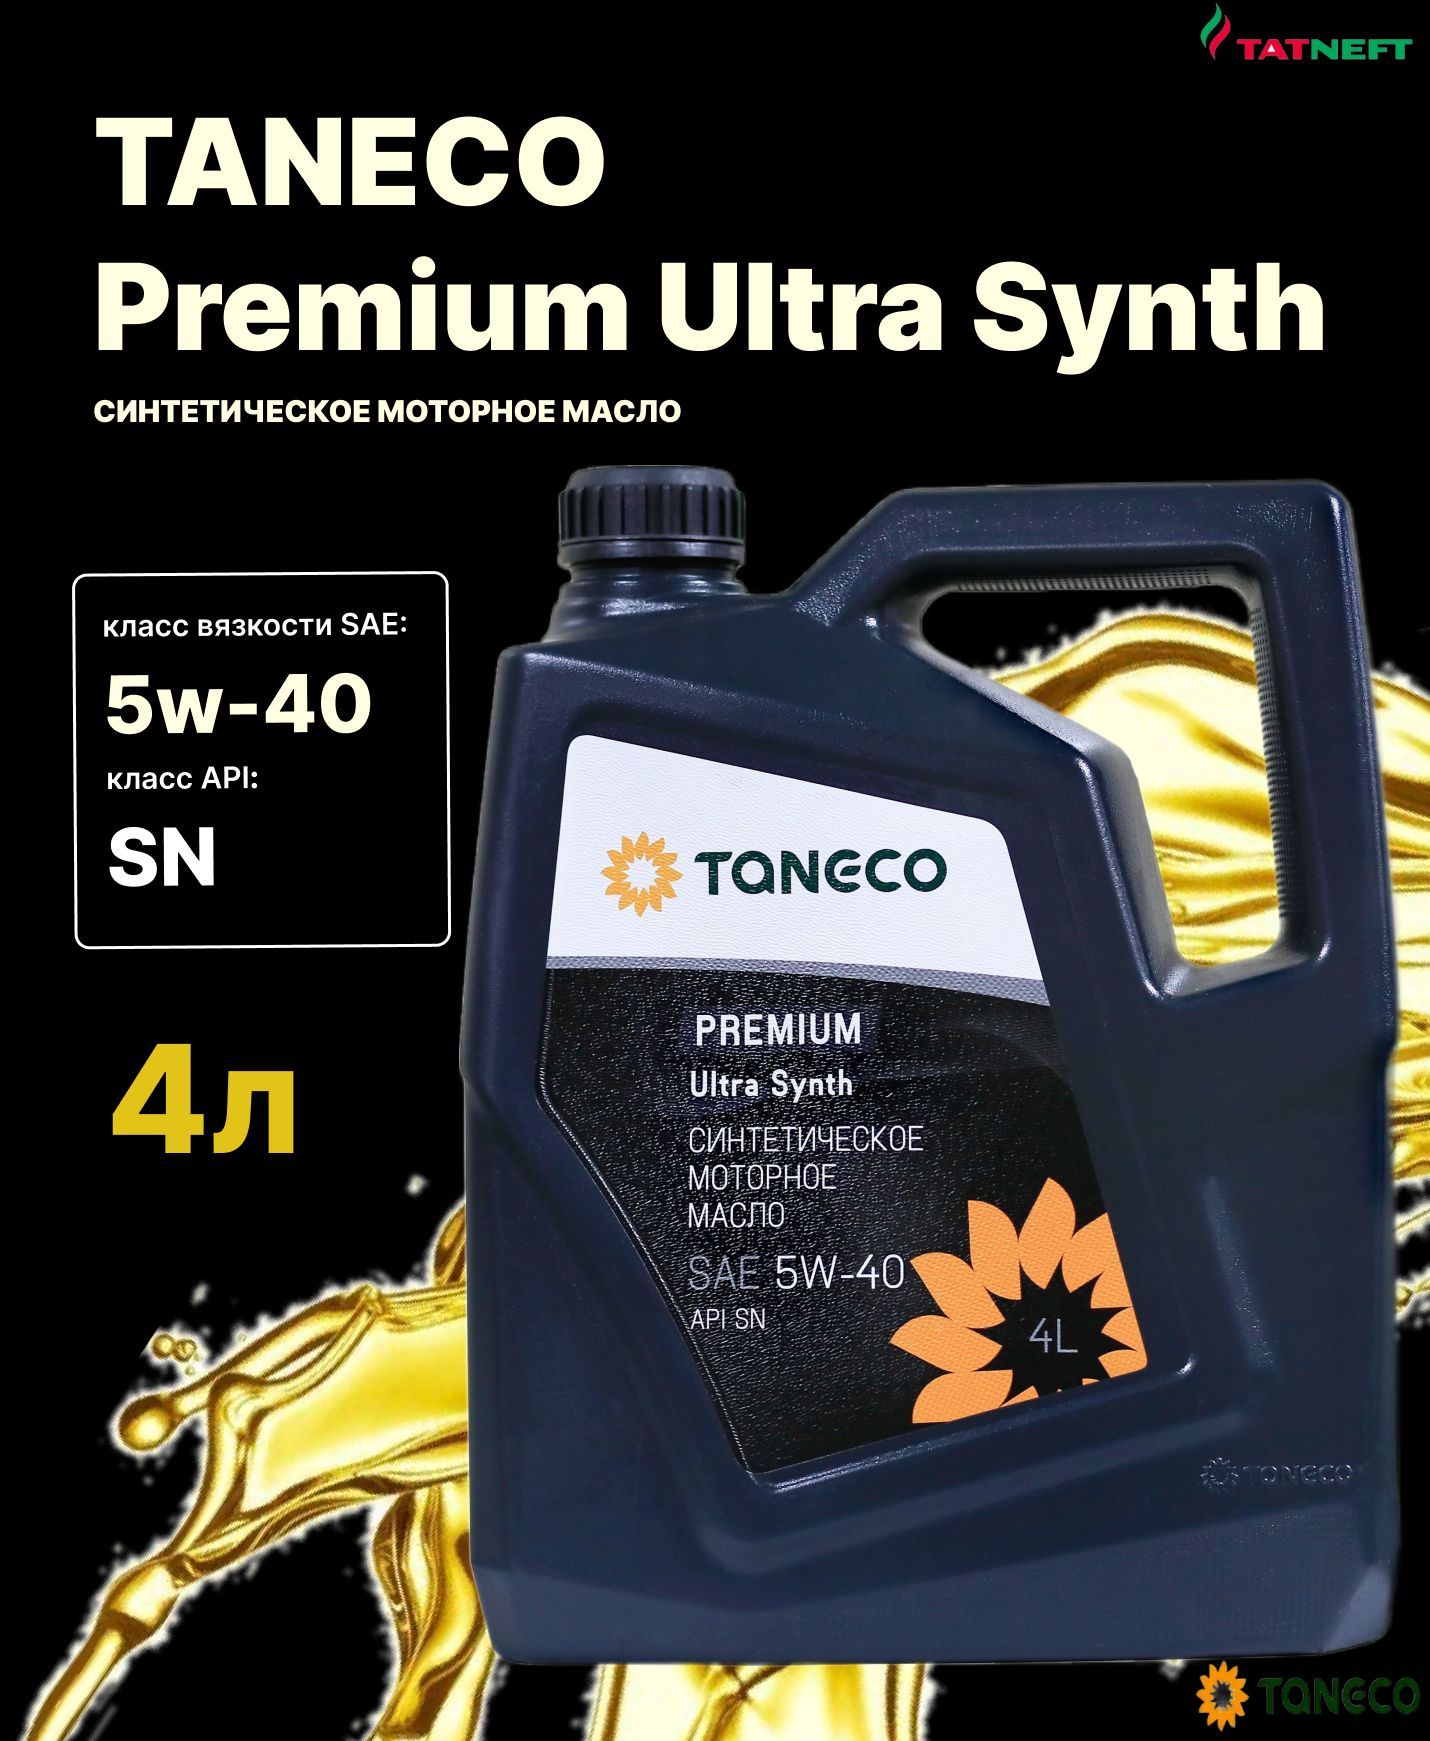 Taneco premium ultra synth 5w. Татнефть 5-40. Татнефть синтетик 5w-40. Масло Taneco Premium Ultra. ТАНЕКО премиум ультра синт 5w30.